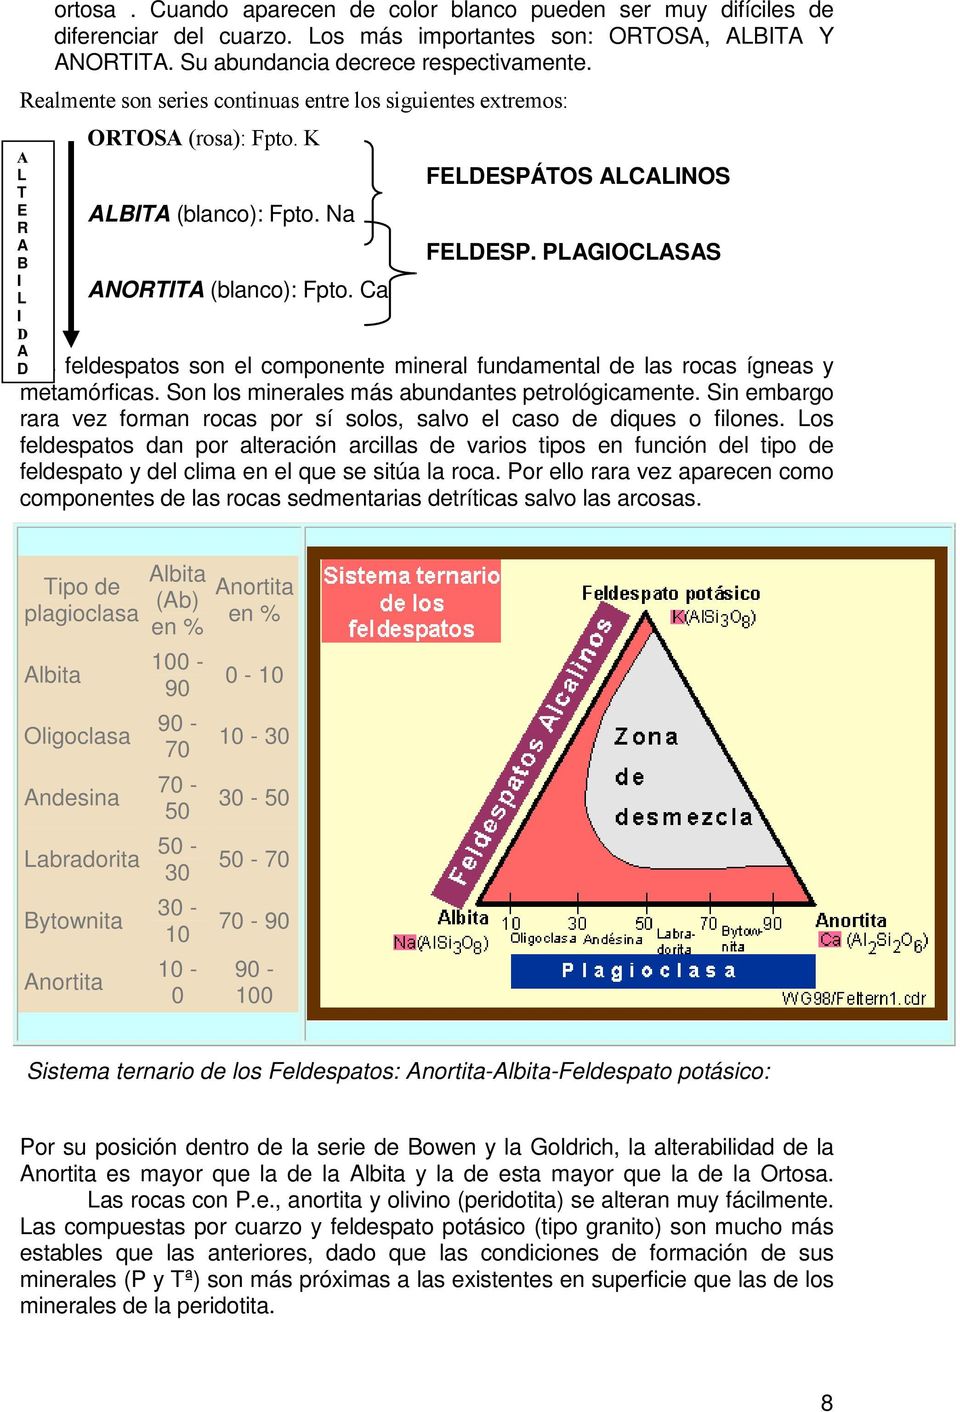 PLAGIOCLASAS D Los feldespatos son el componente mineral fundamental de las rocas ígneas y metamórficas. Son los minerales más abundantes petrológicamente.